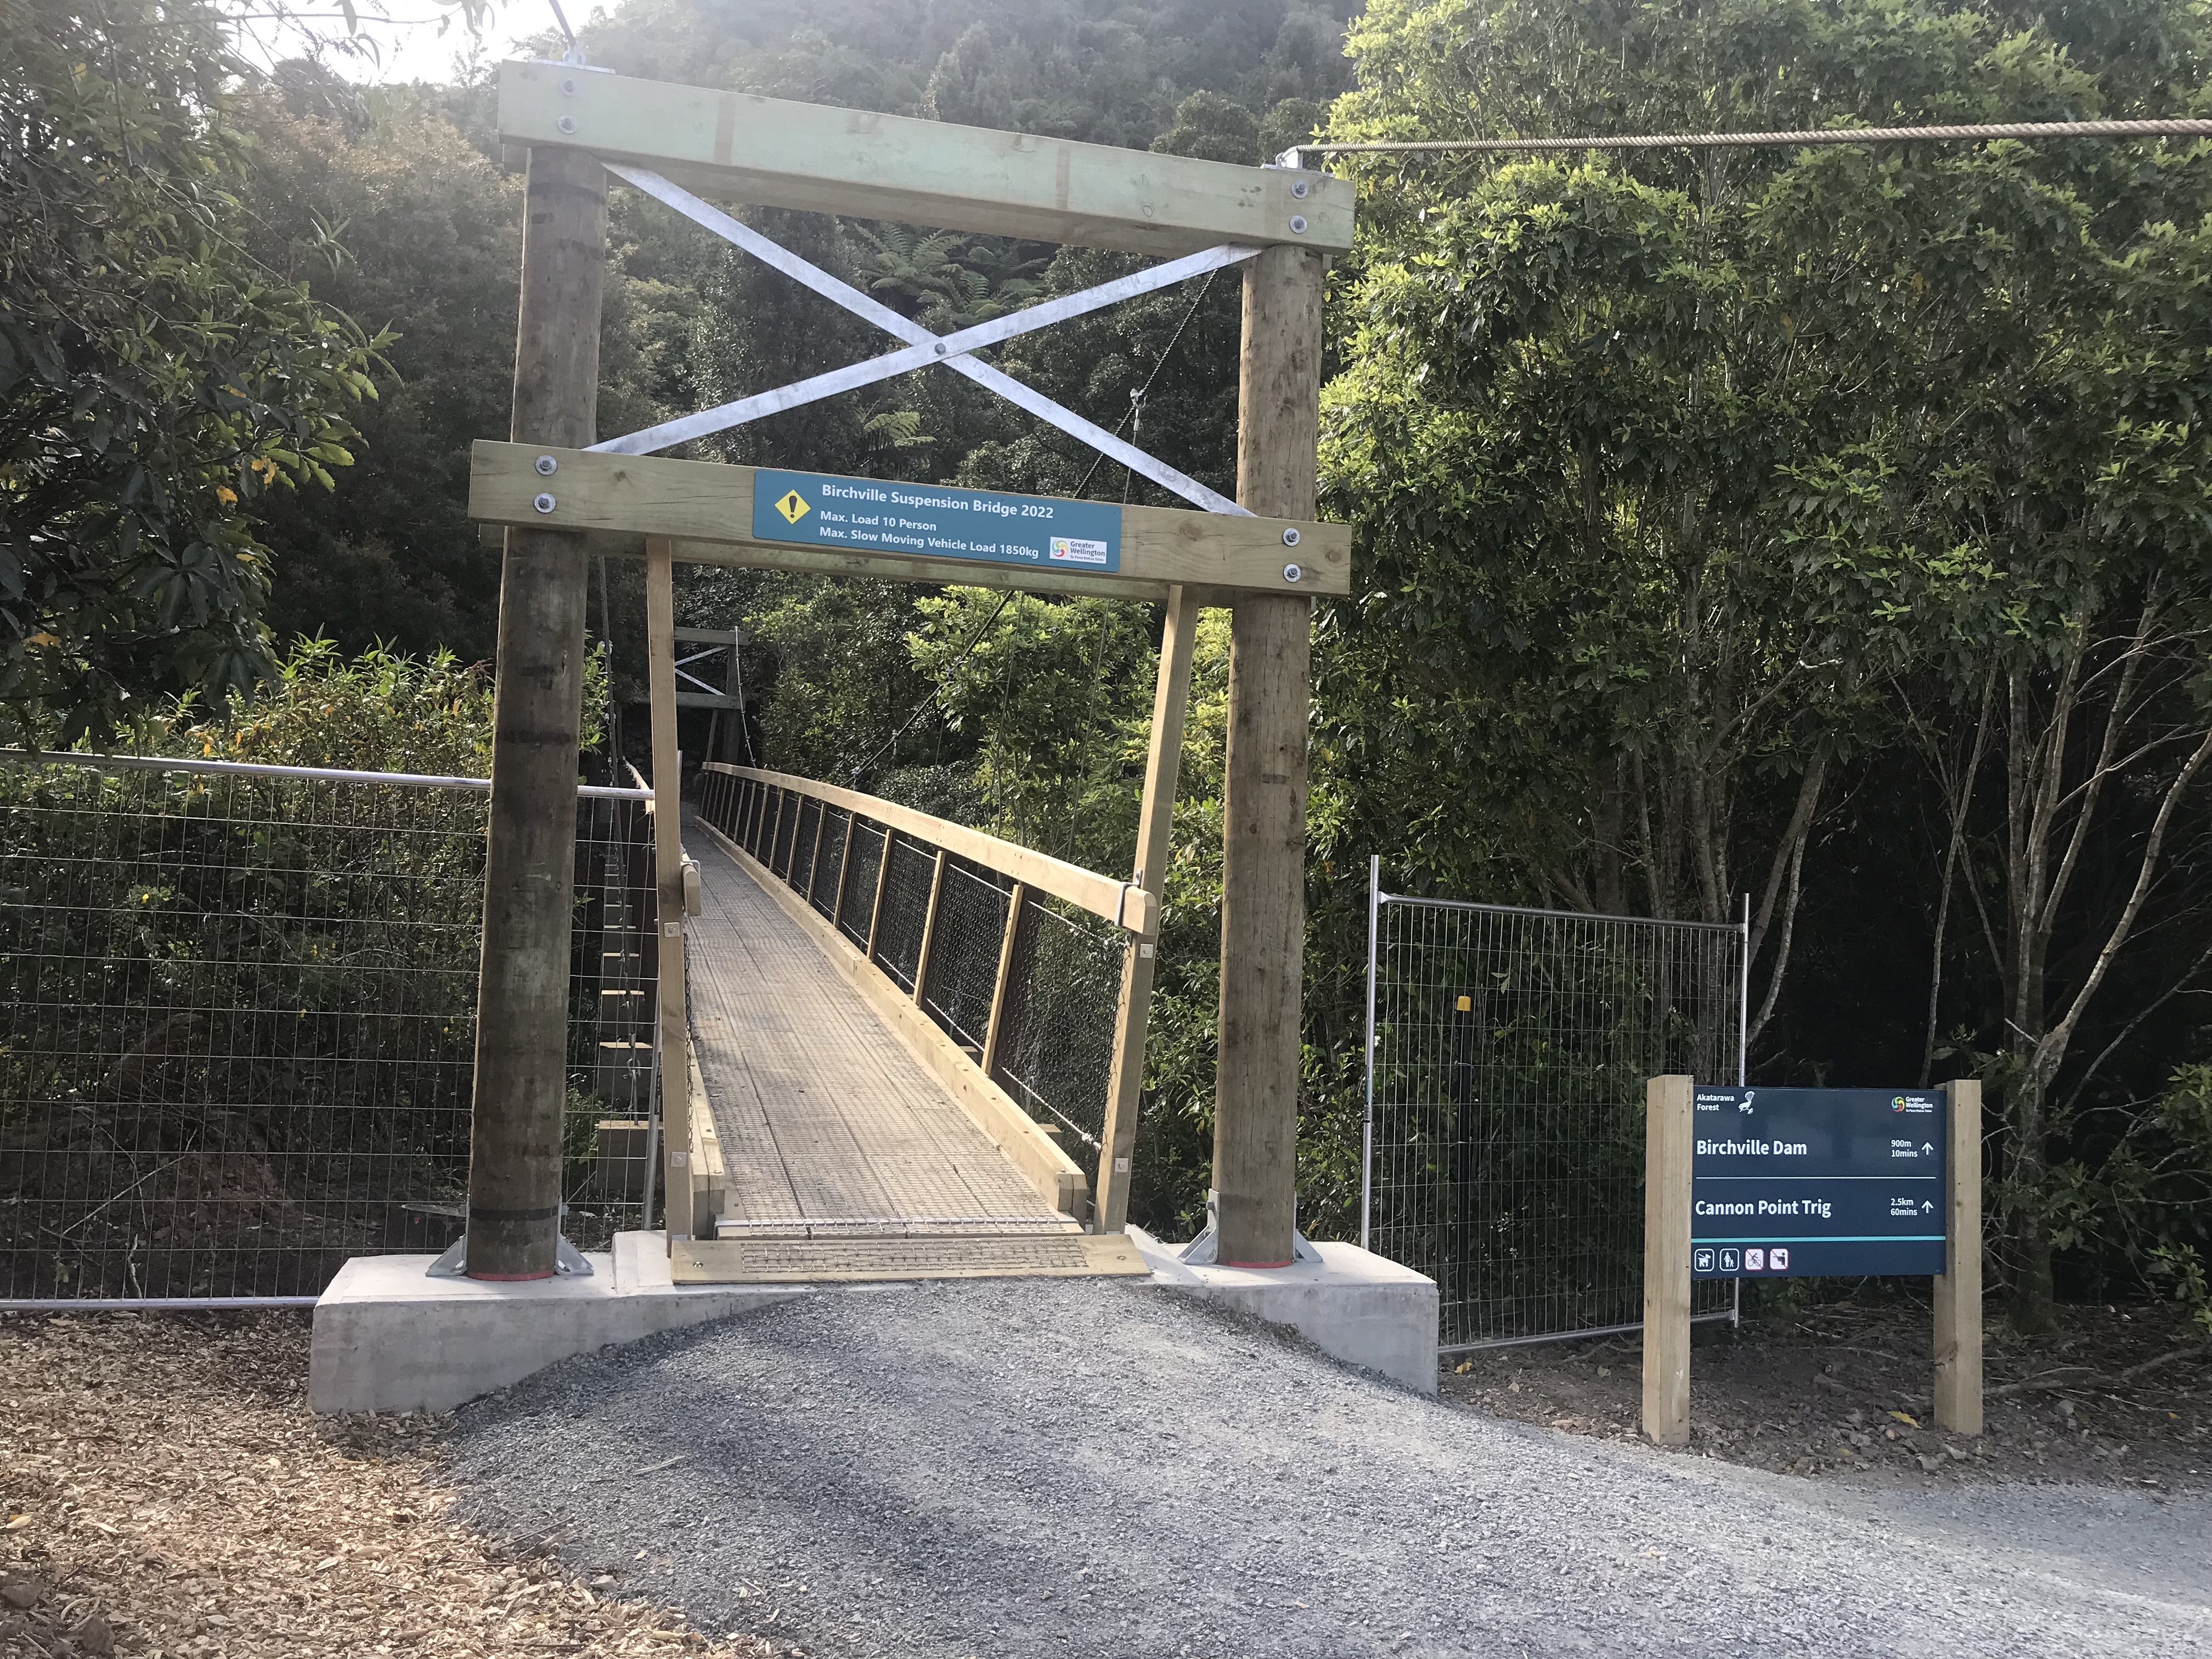 New Akatarawa swingbridge